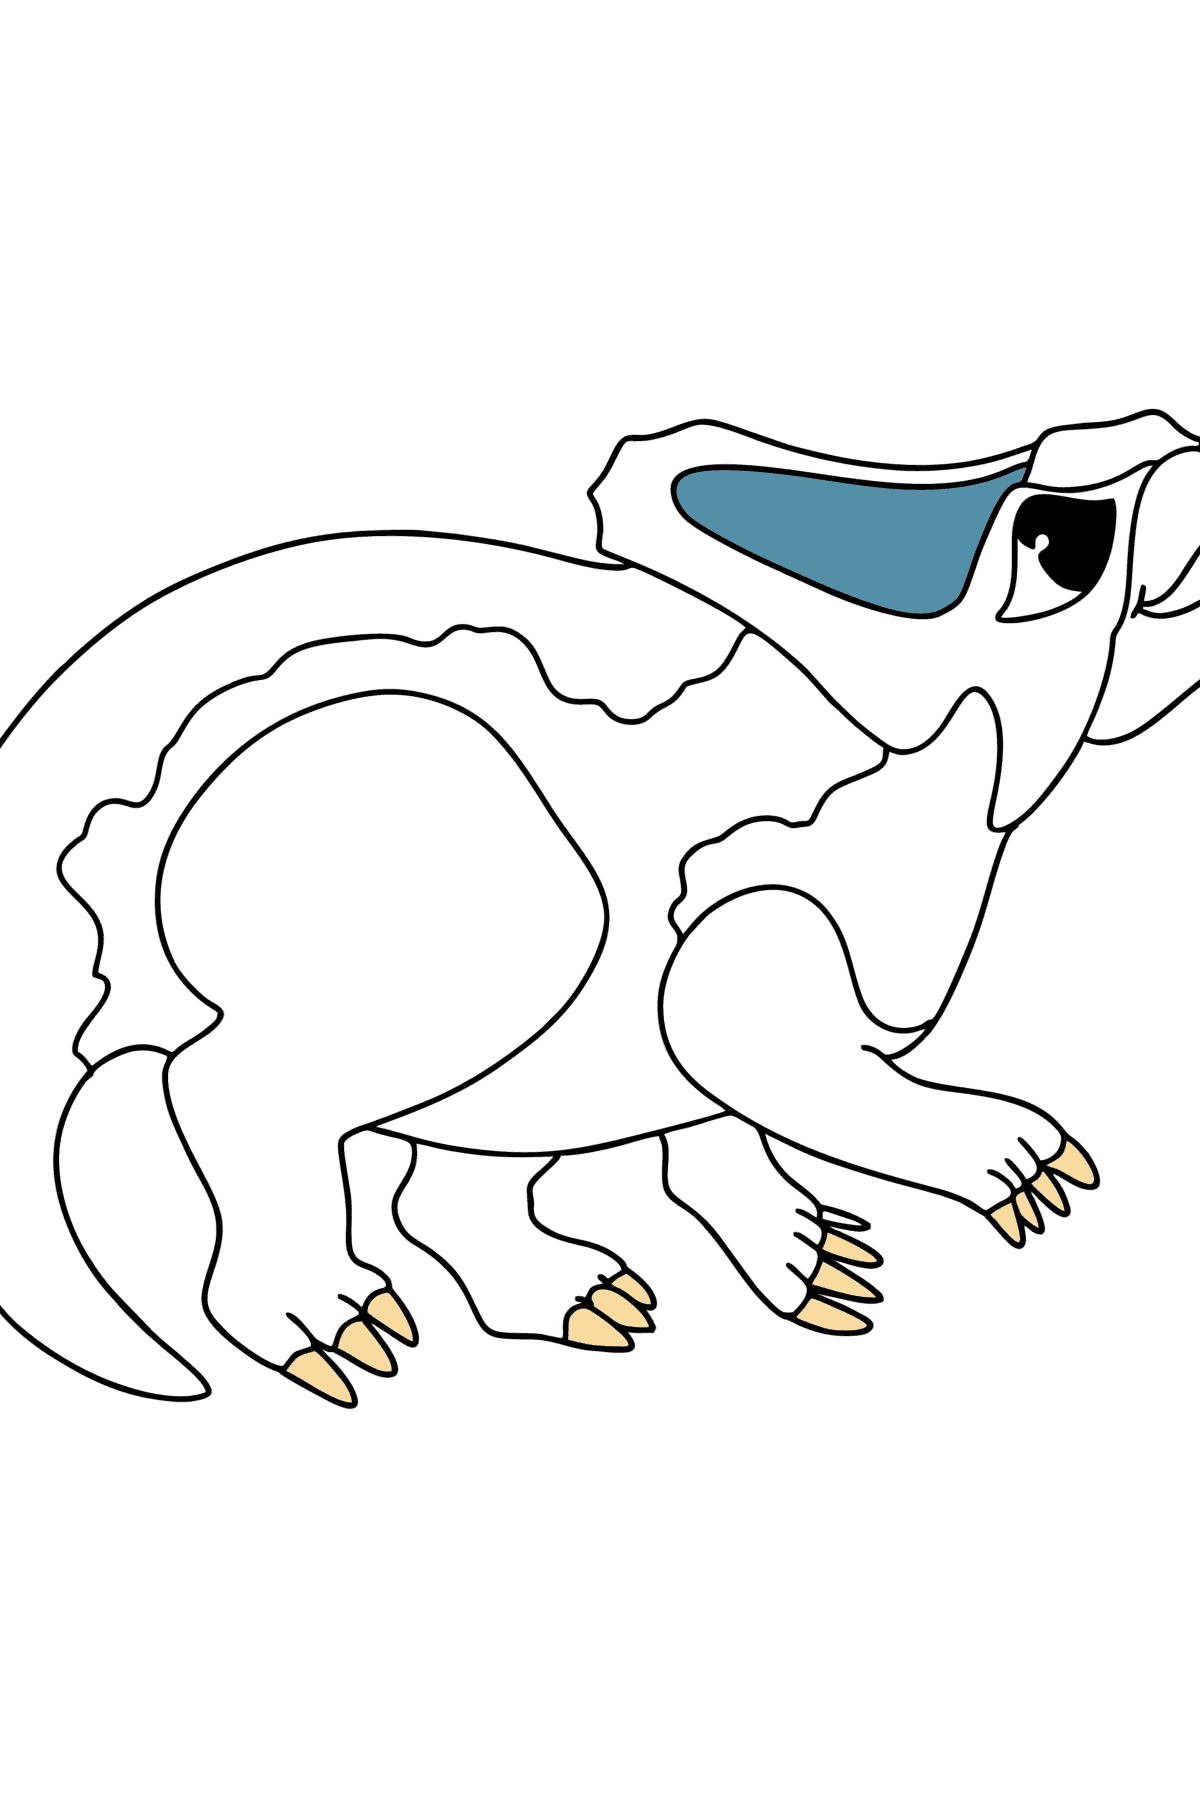 Tegning til fargelegging protoceratops - Tegninger til fargelegging for barn